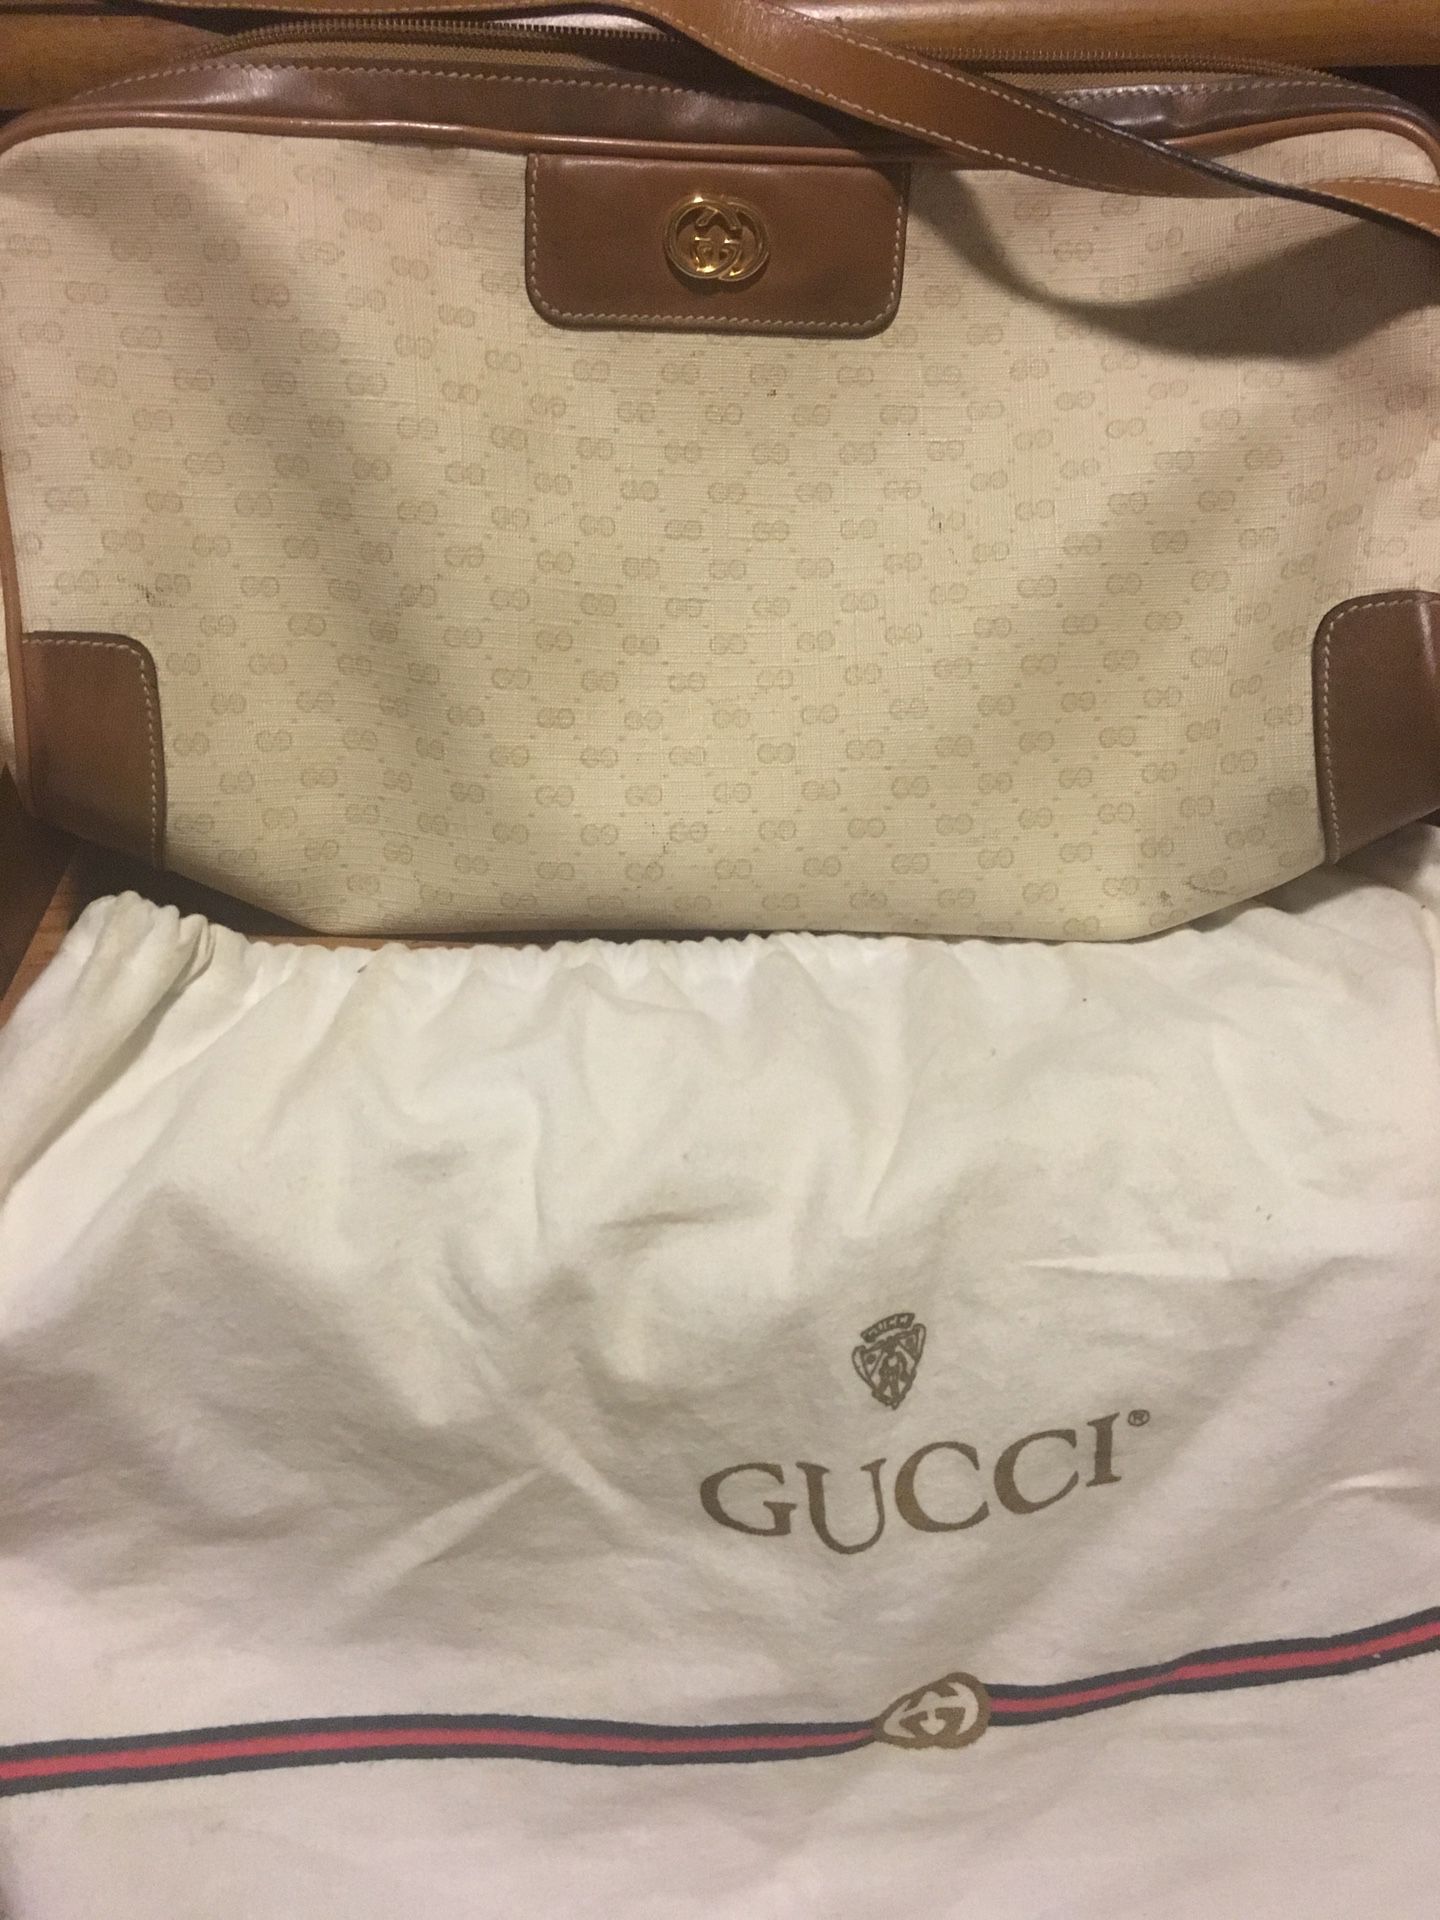 Genuine Gucci Purse